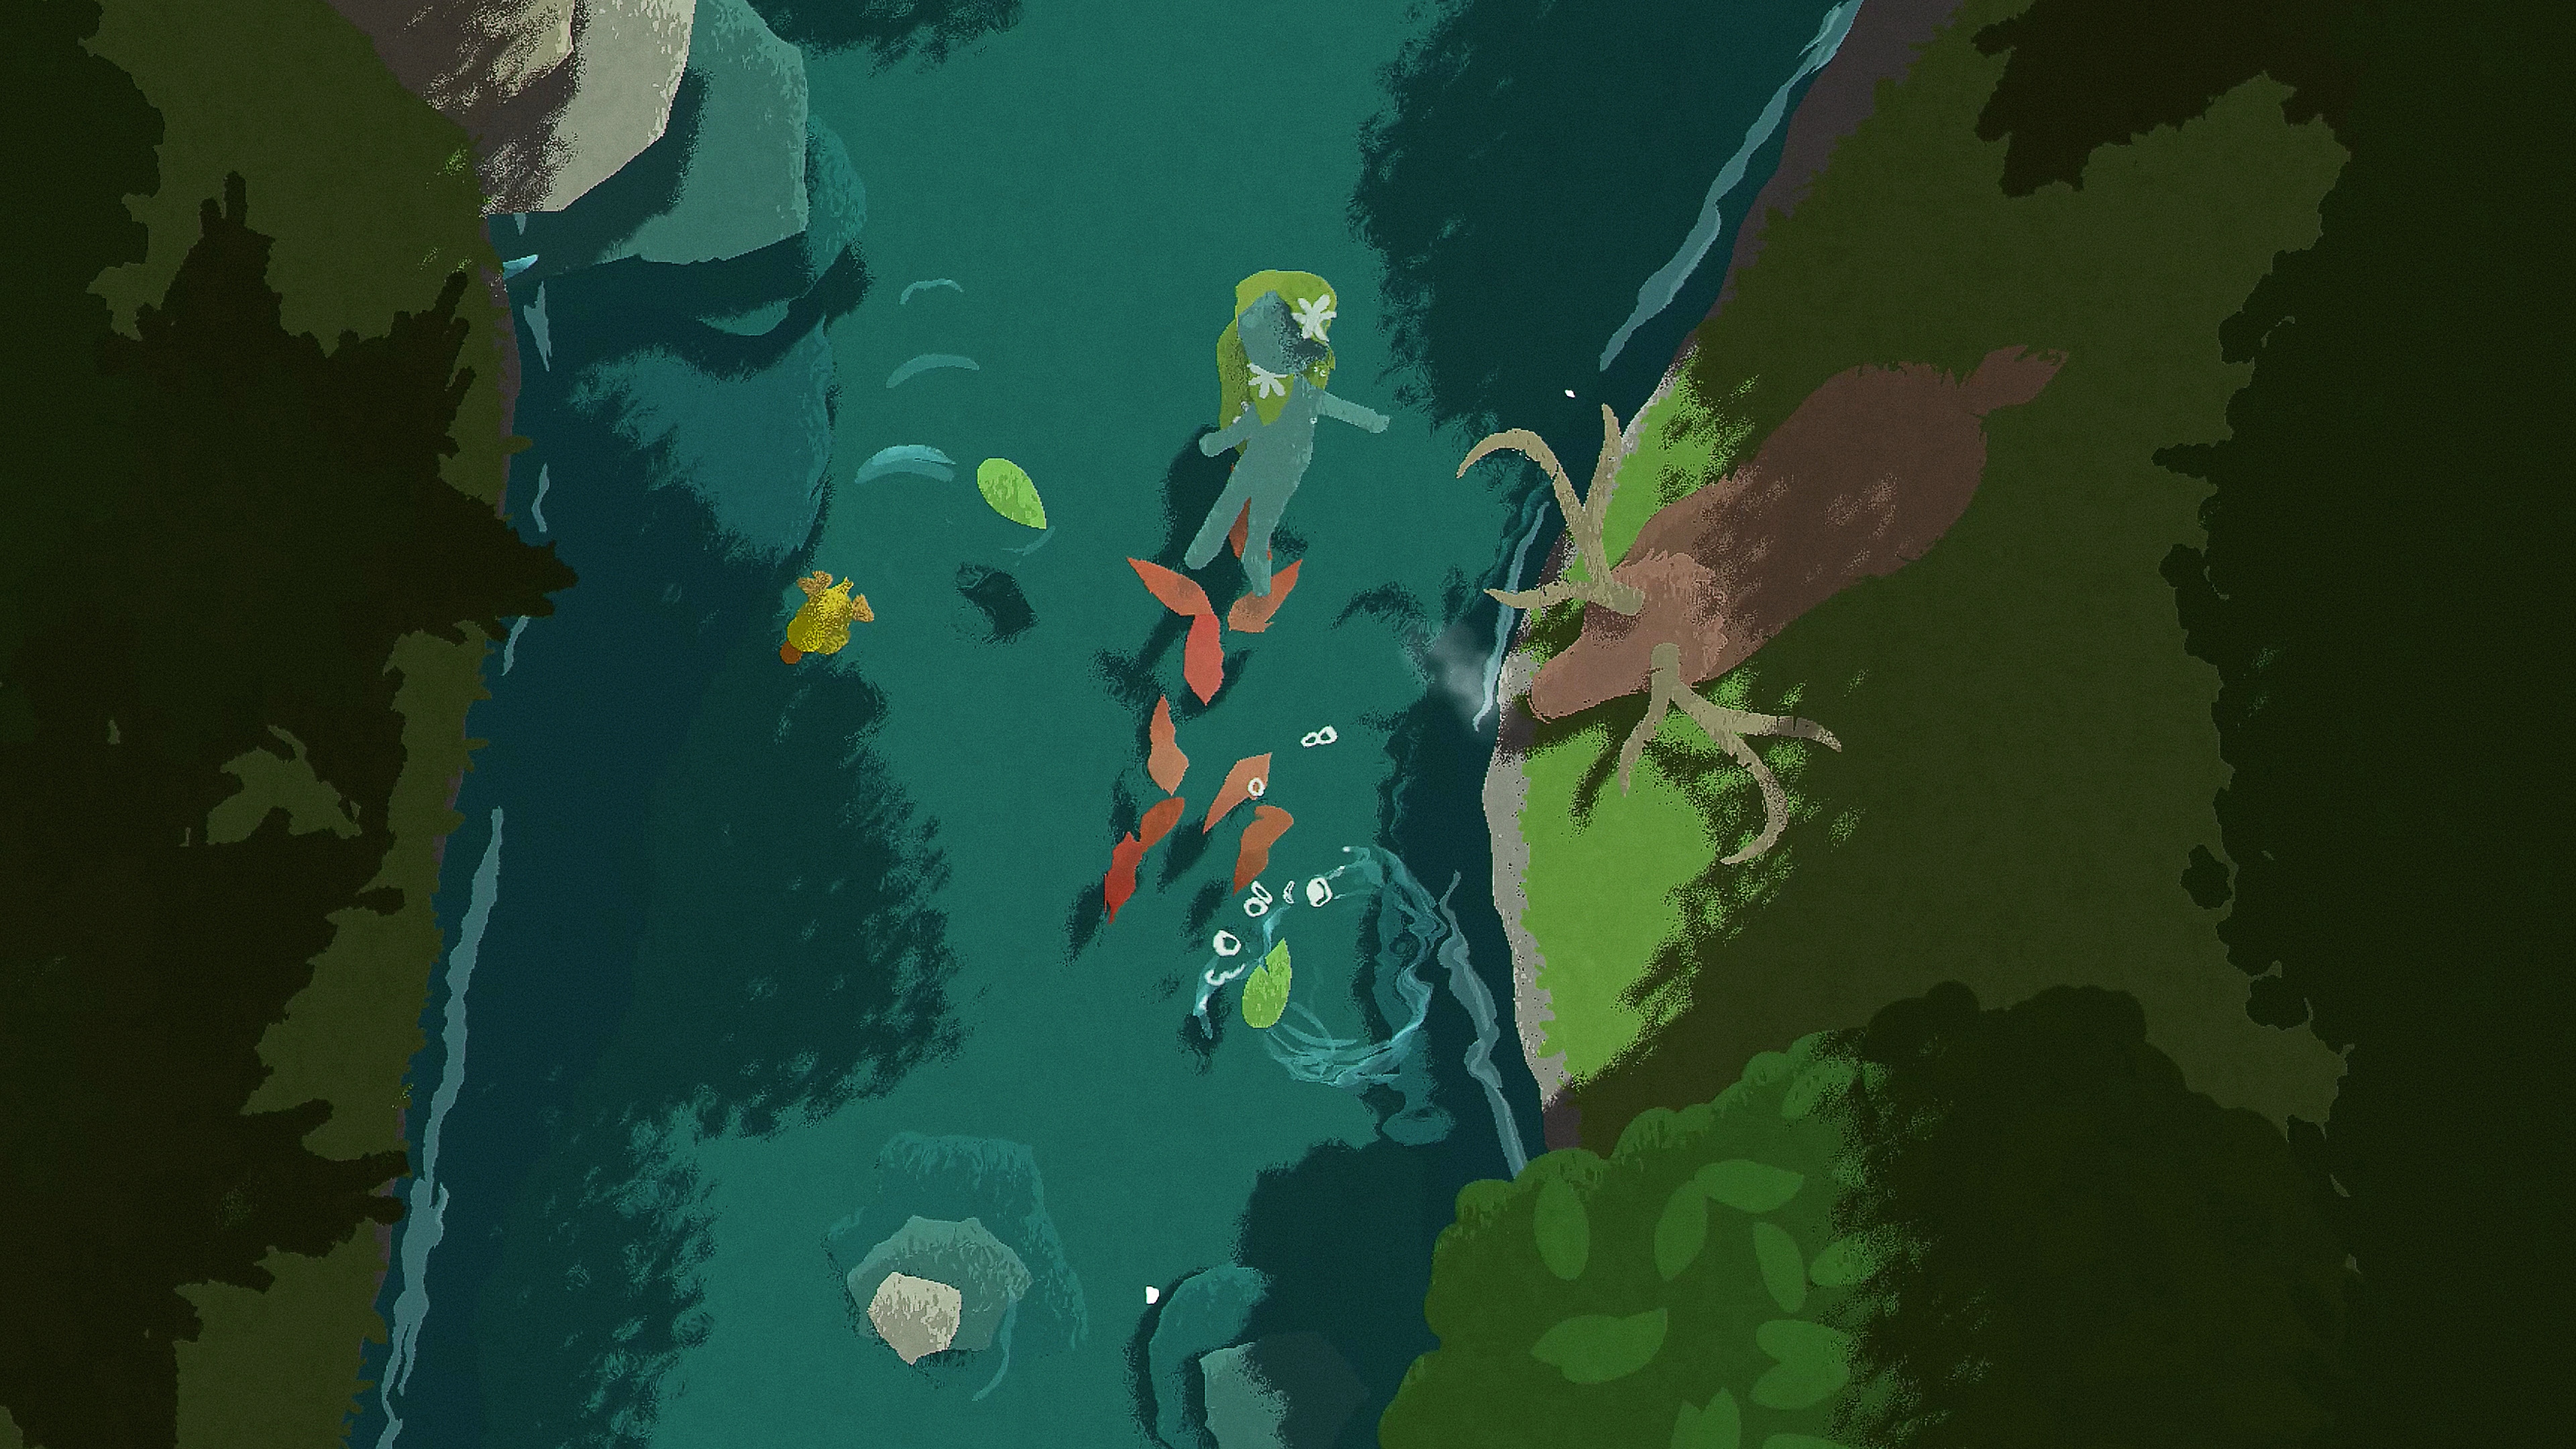 Captura de pantalla de Naiad en la que se ve a un personaje flotando por un río mientras un ciervo se encuentra en la orilla